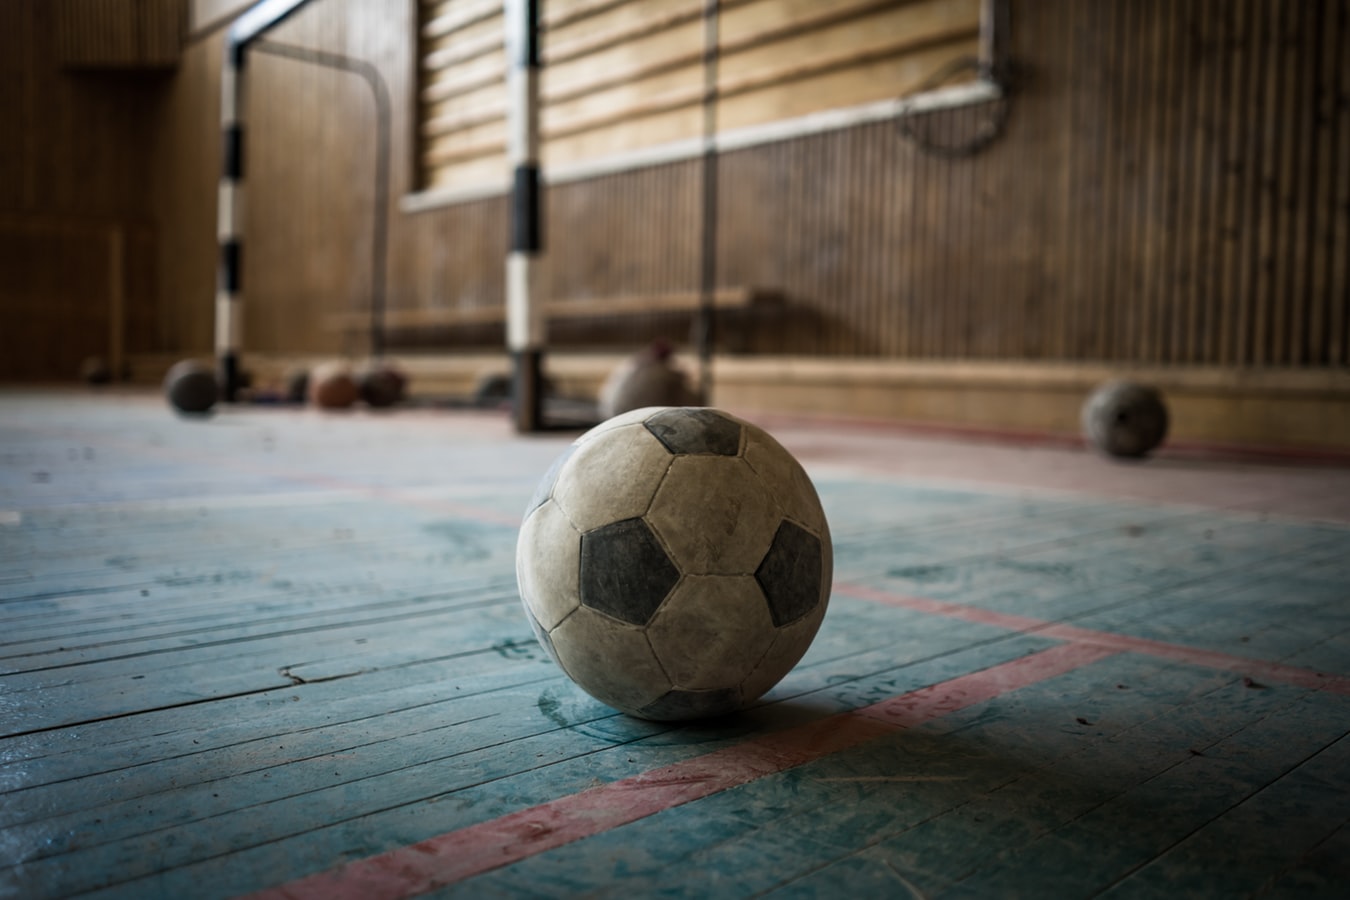 Μέτρα για κορονοϊό: Παρατάθηκε η απαγόρευση λειτουργίας αθλητικών εγκαταστάσεων